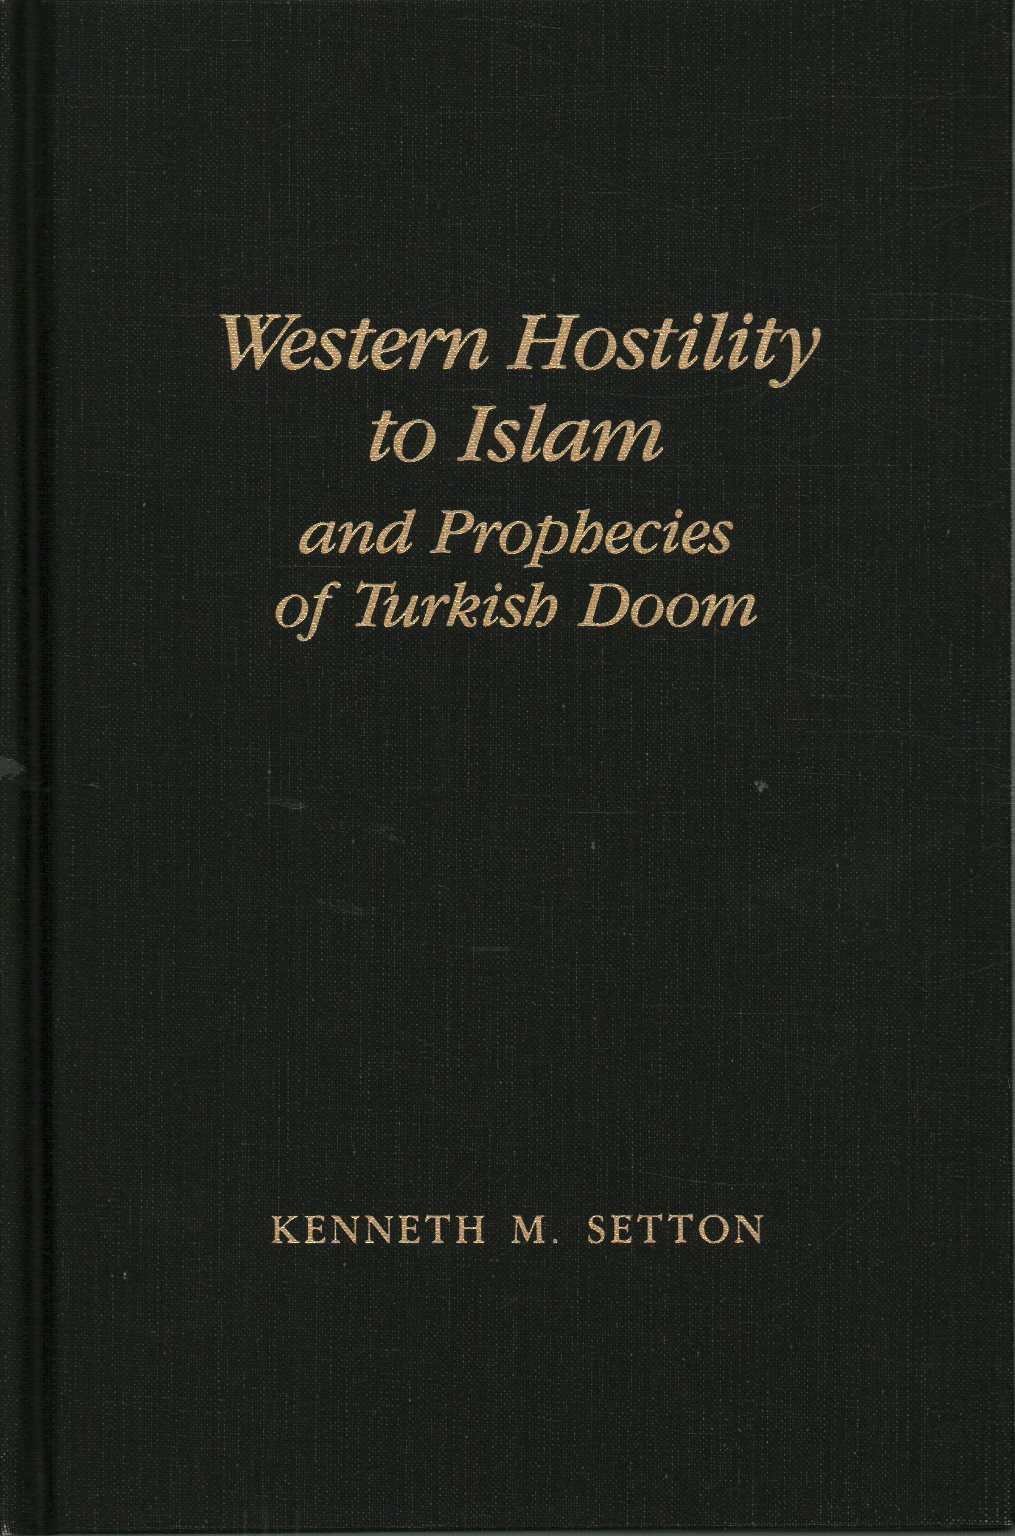 L'ouest de l'Hostilité à l'Islam et aux prophéties de Turki, Kenneth M.. Setton